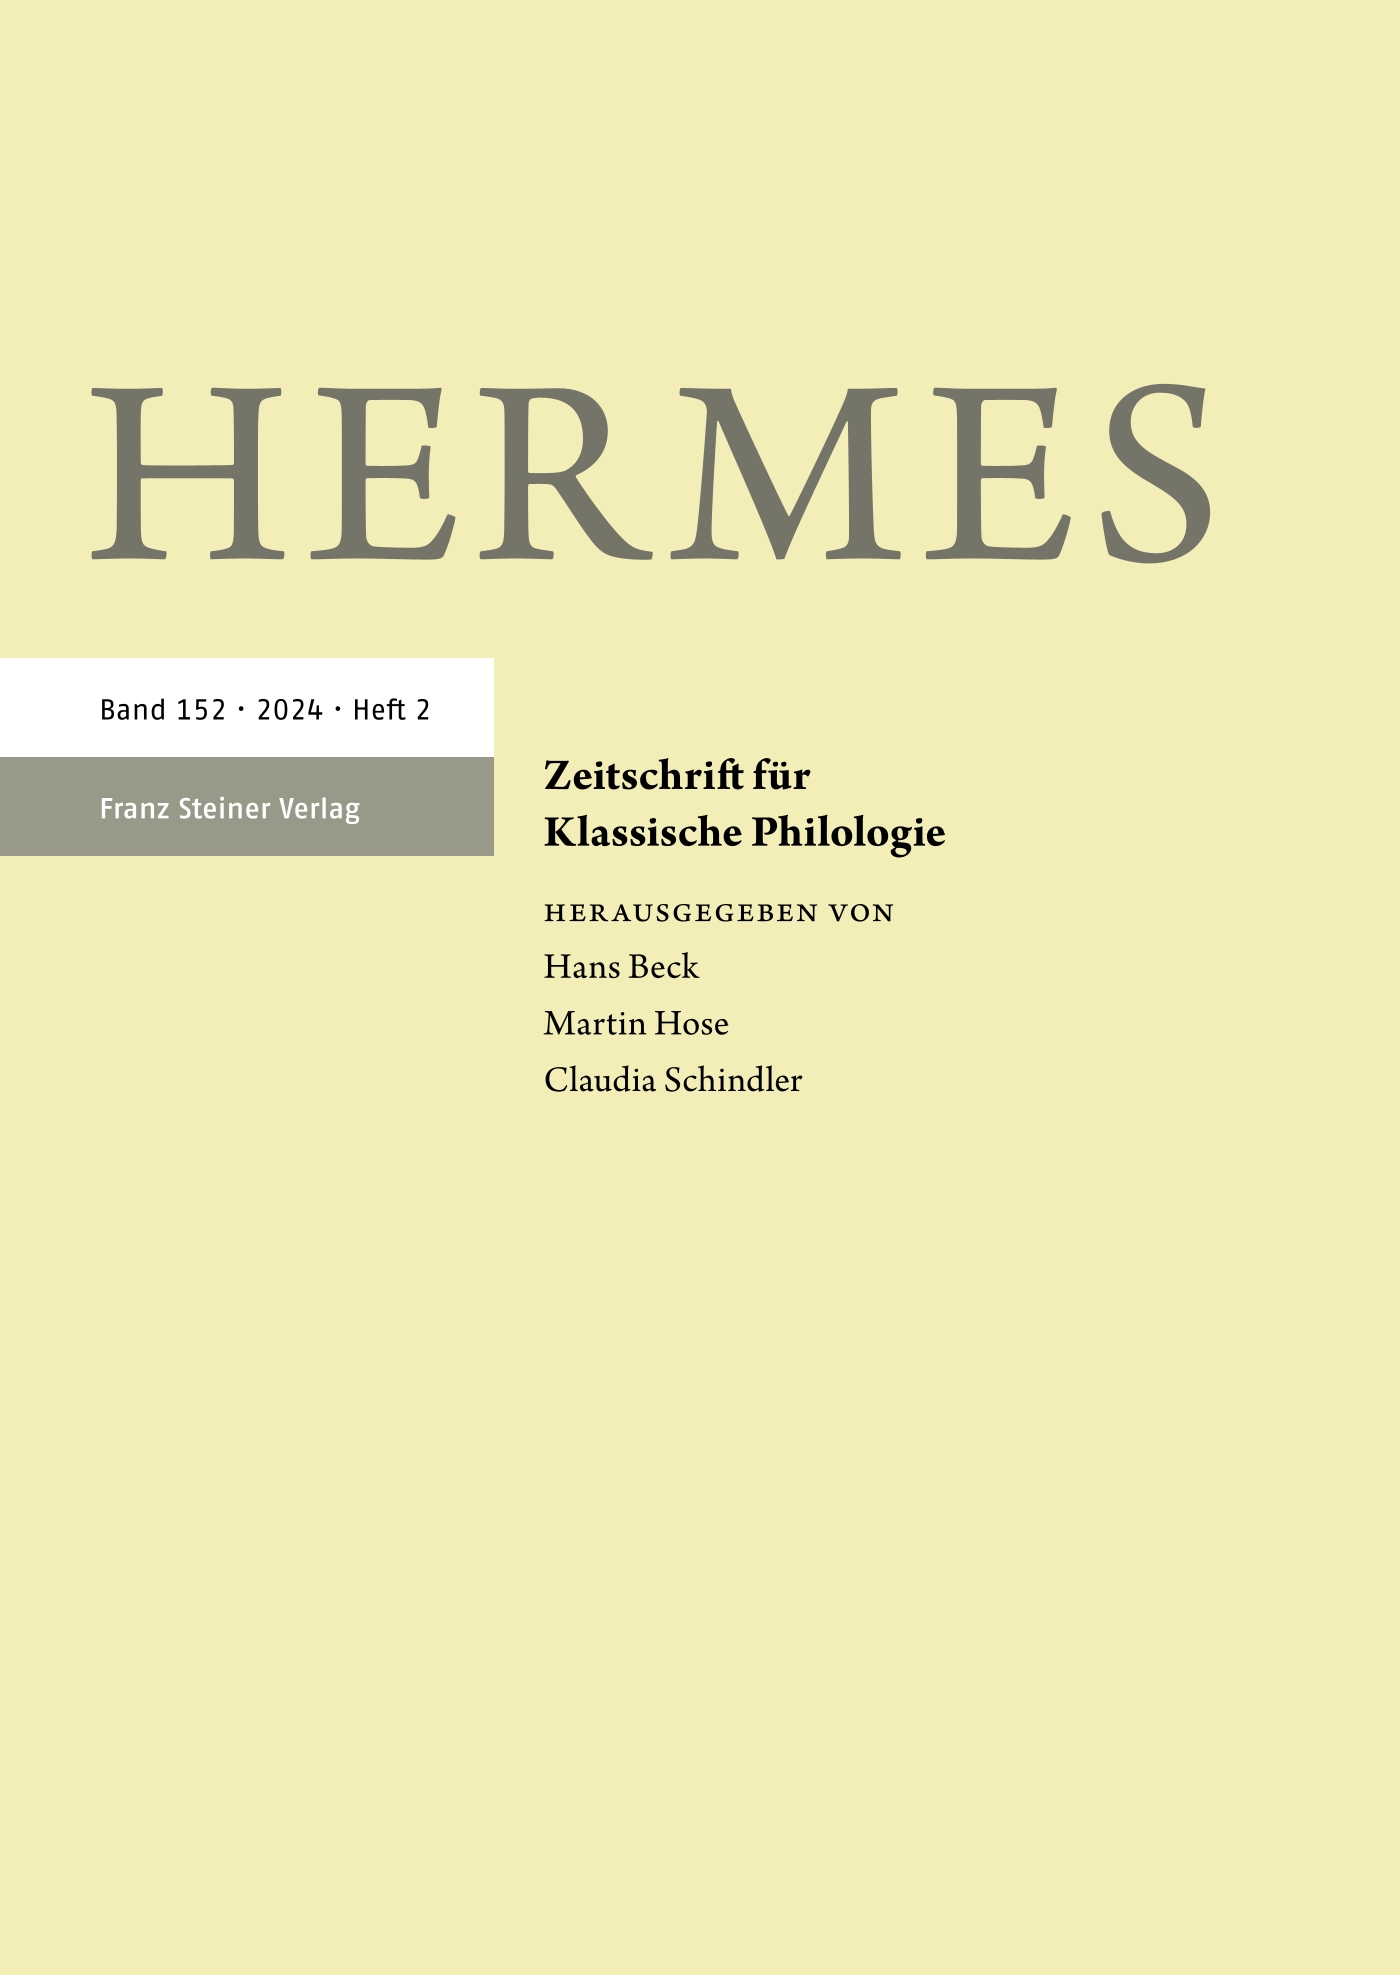 Hermes - print + online